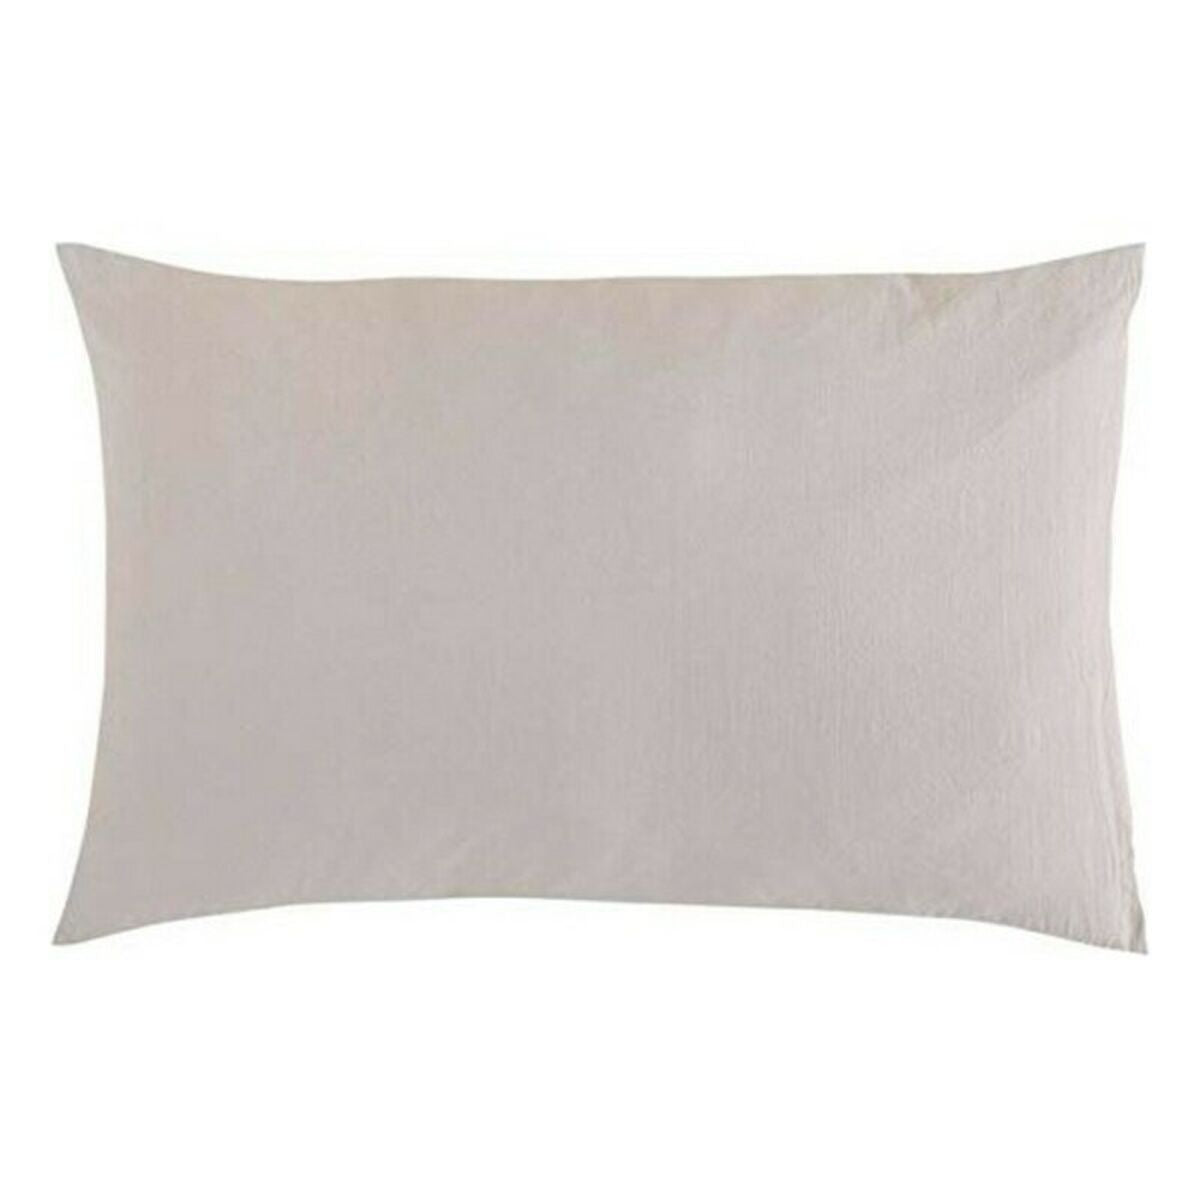 Pillowcase Naturals Beige